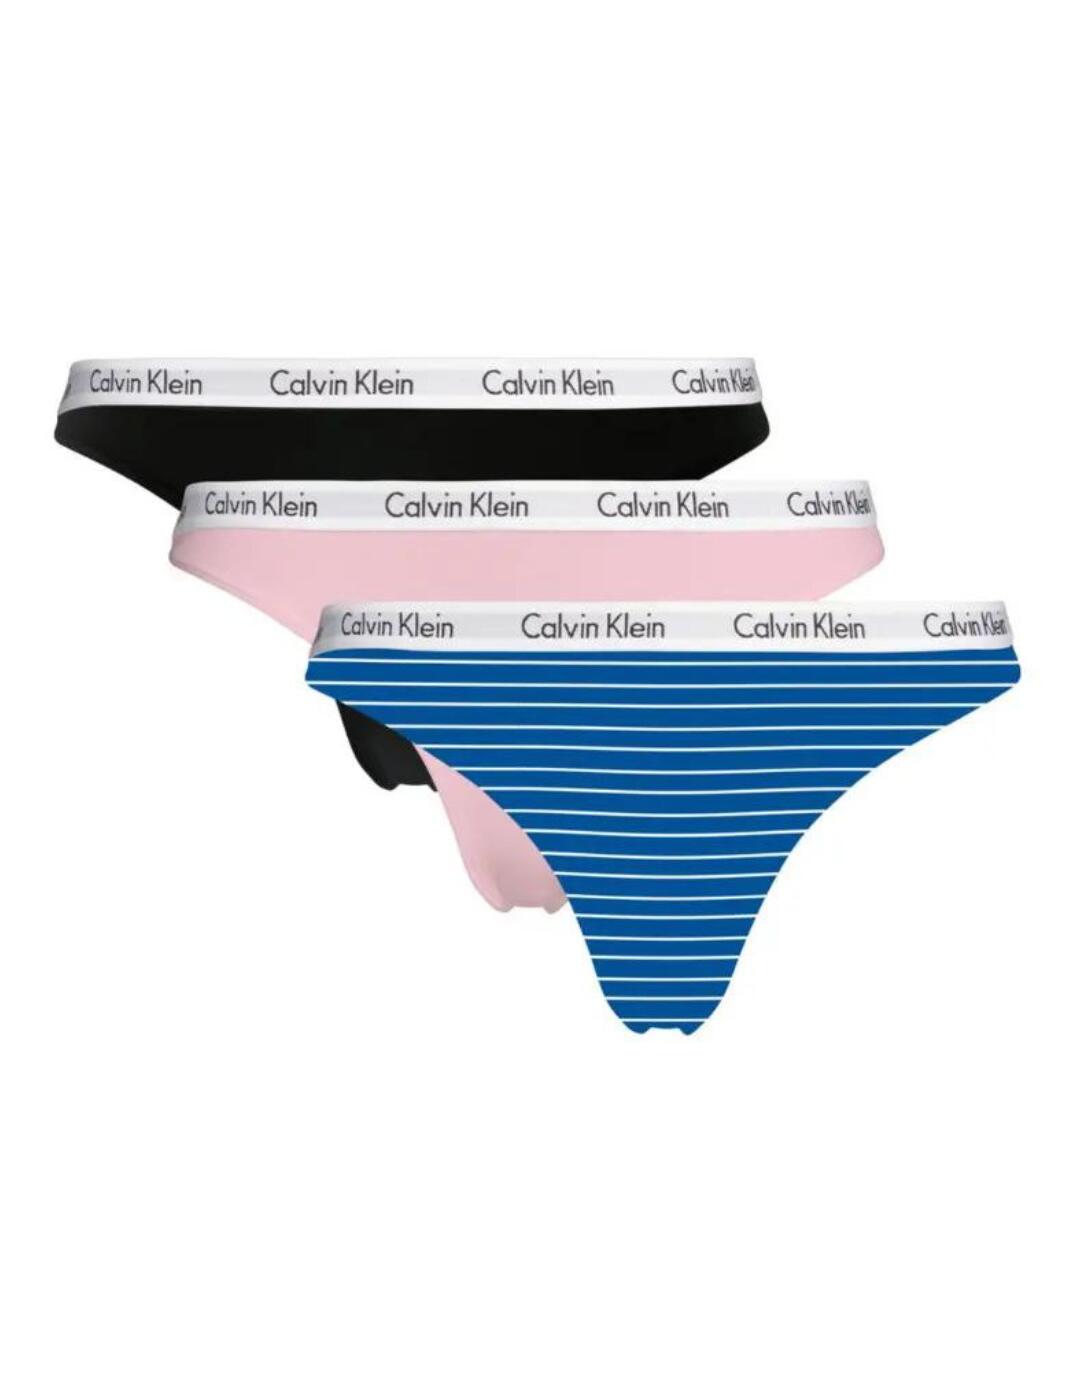 000QD3587E Calvin Klein Carousel Thong 3 Pack - QD3587E Stripe Kettle Blue  / Sand Rose / Black